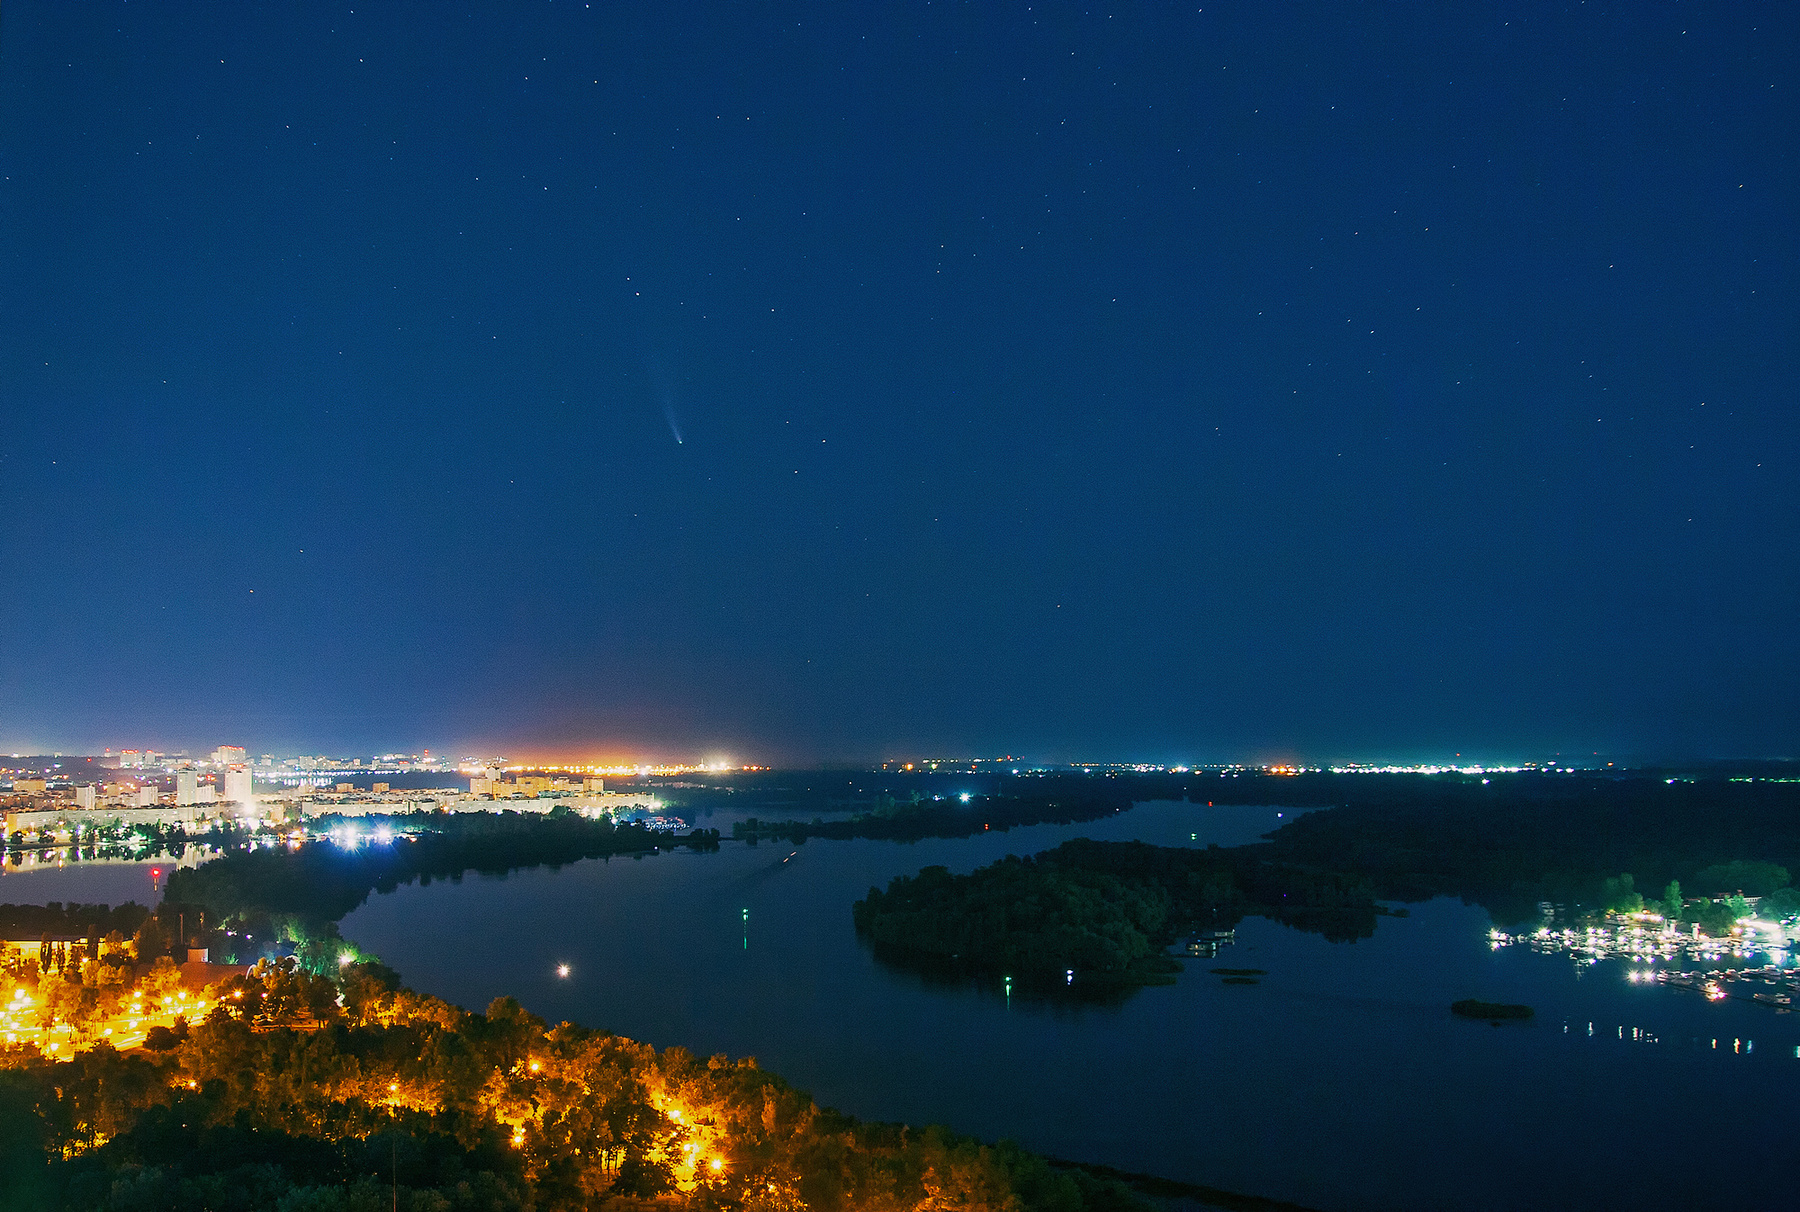 Комета над Киевом_2 комета comet neowise C 2020F3 ночной пейзаж ночное небо Киев звездное звезды